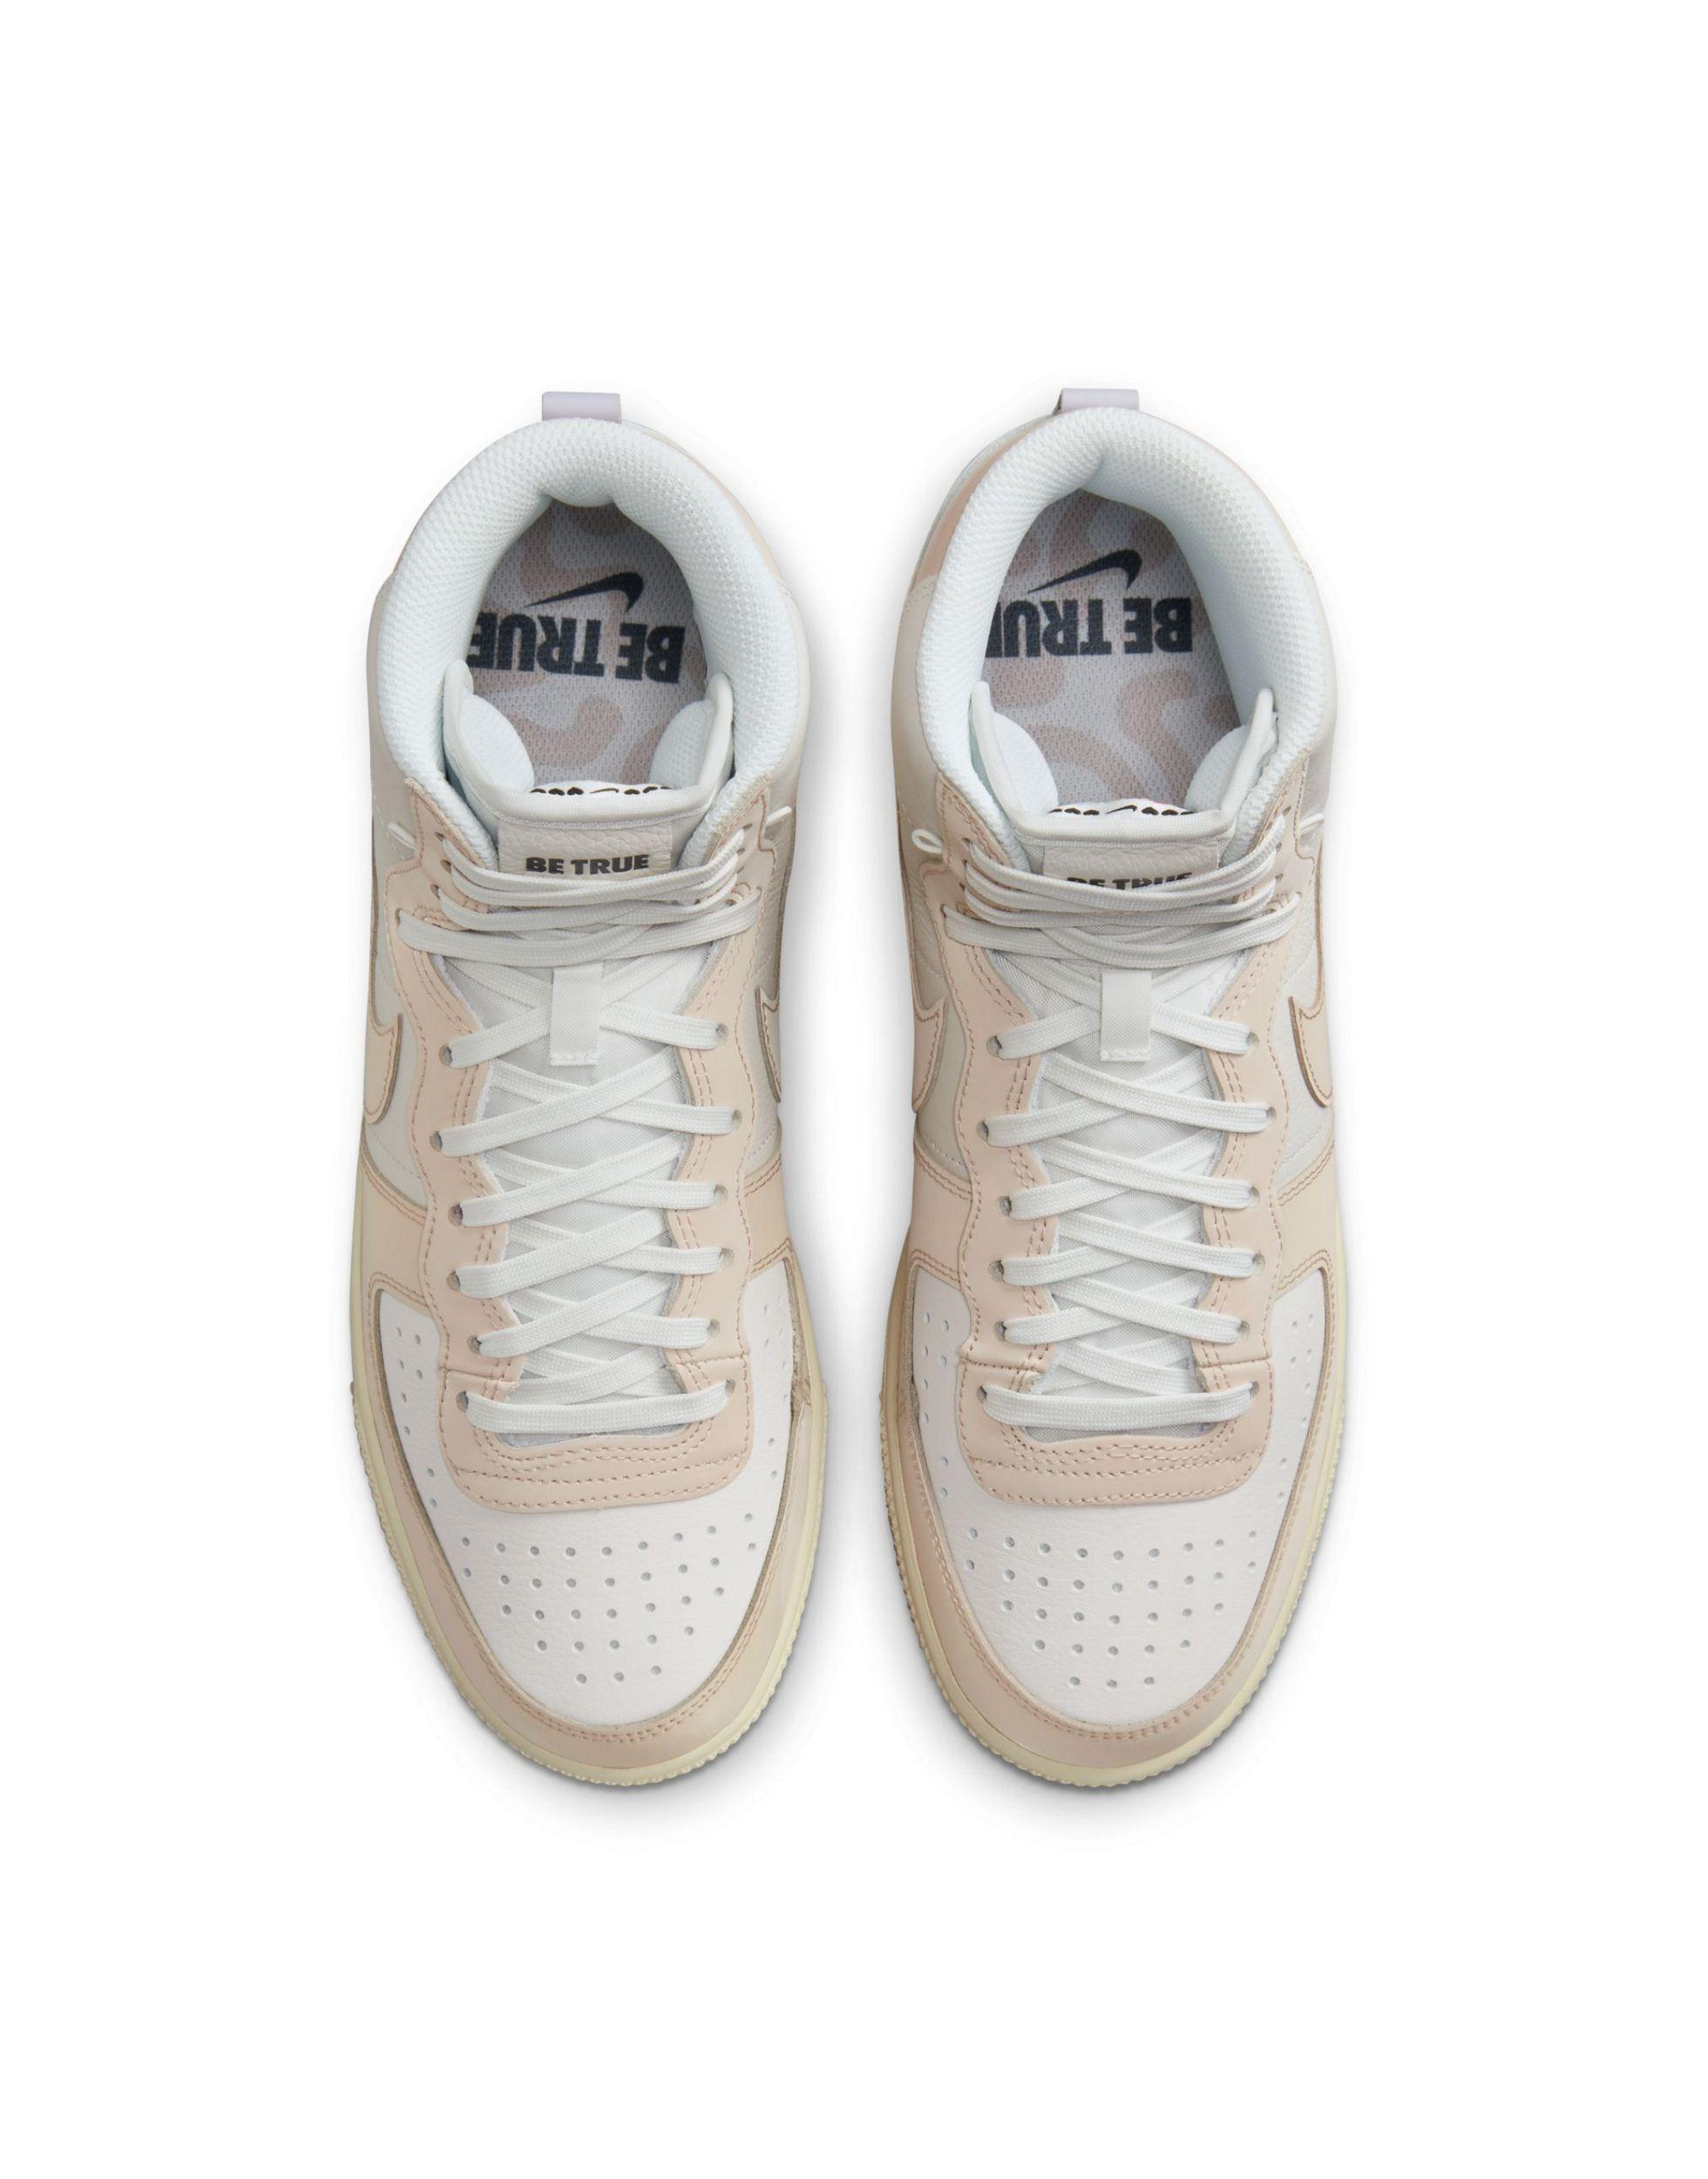 meer en meer opvolger Atlas Nike Terminator High Bt Unisex Sneakers in White | Lyst